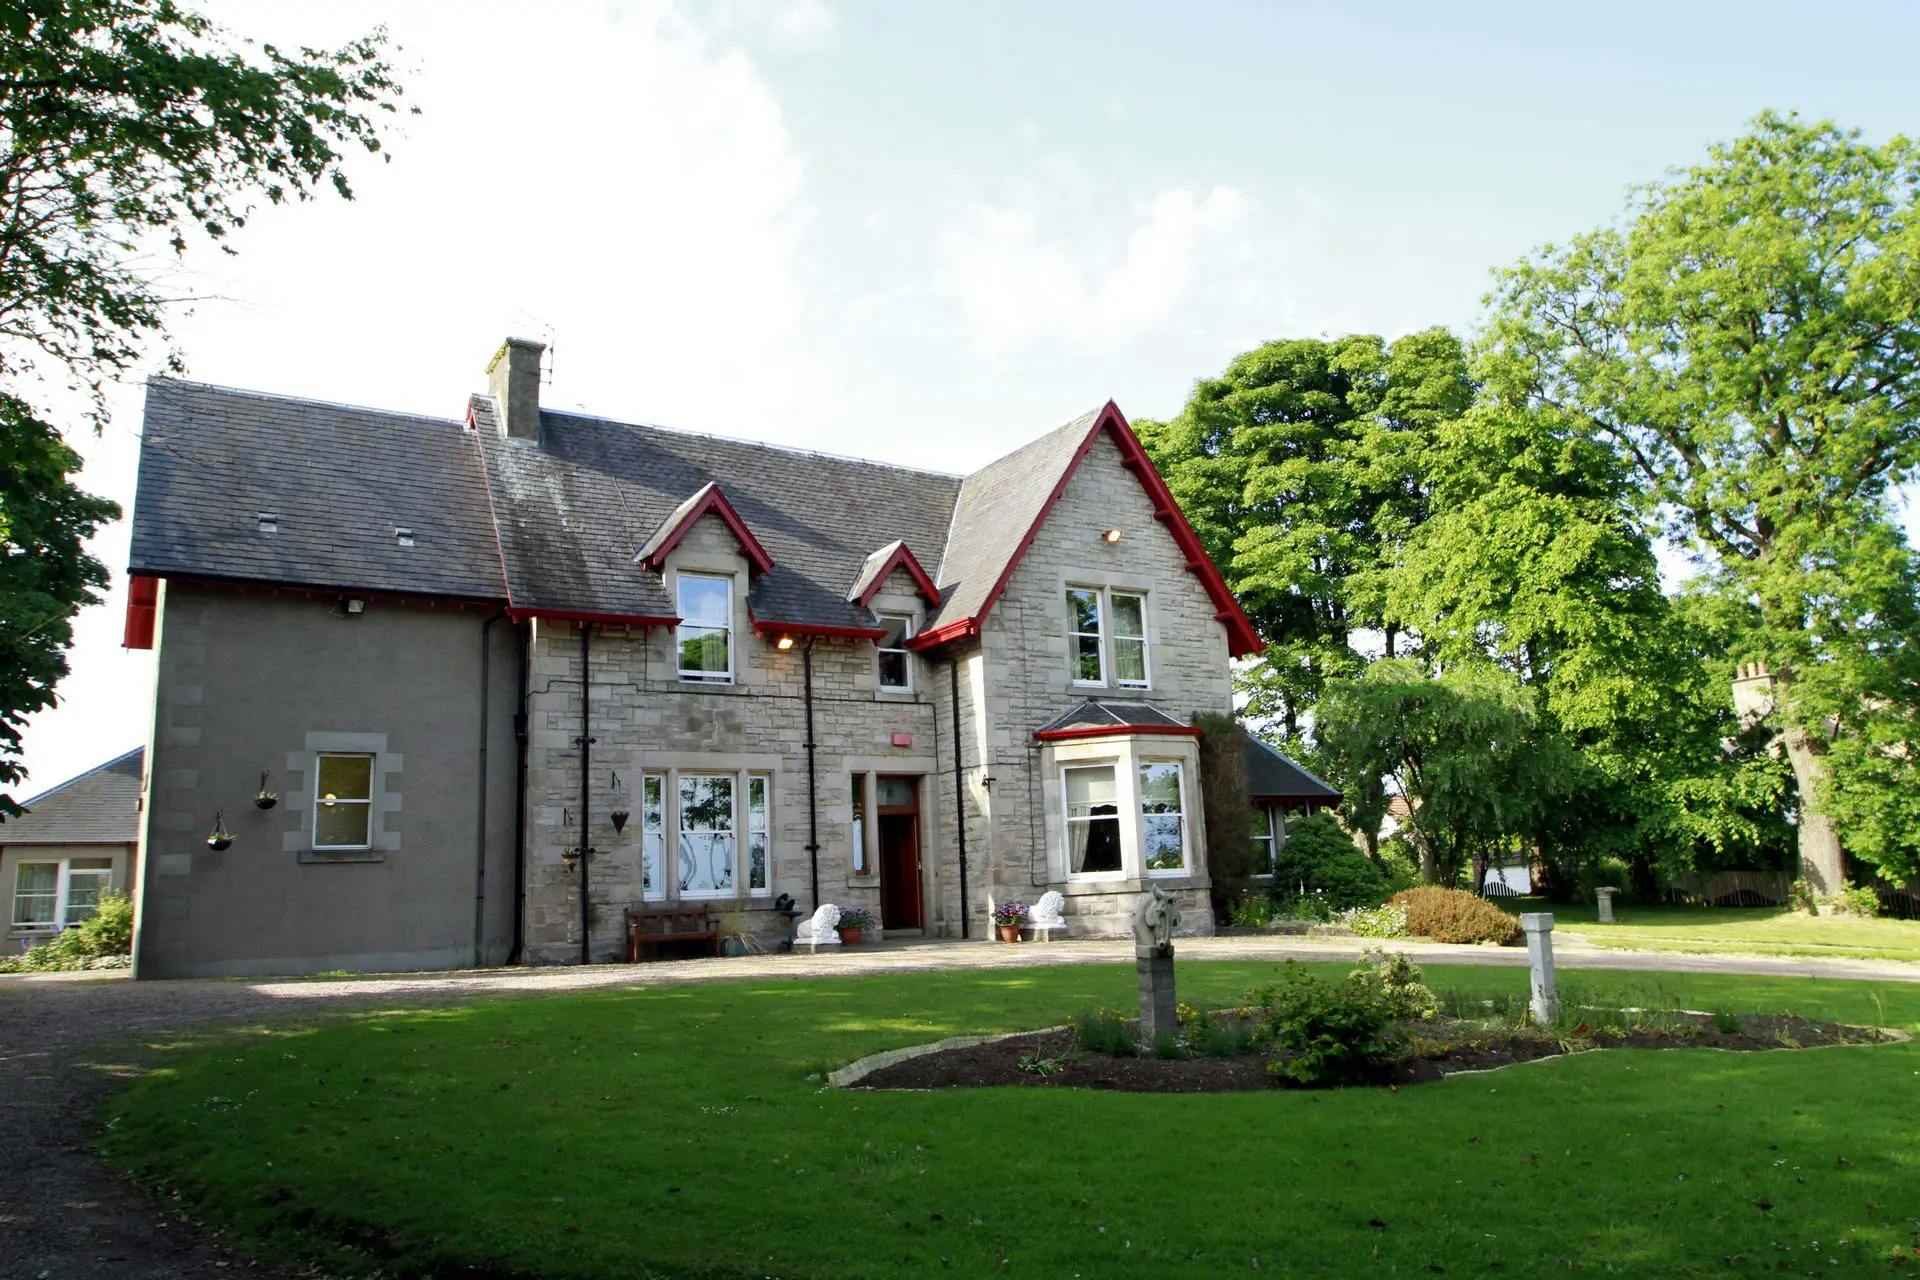 Garden of Scoonie House in Leven, Fife